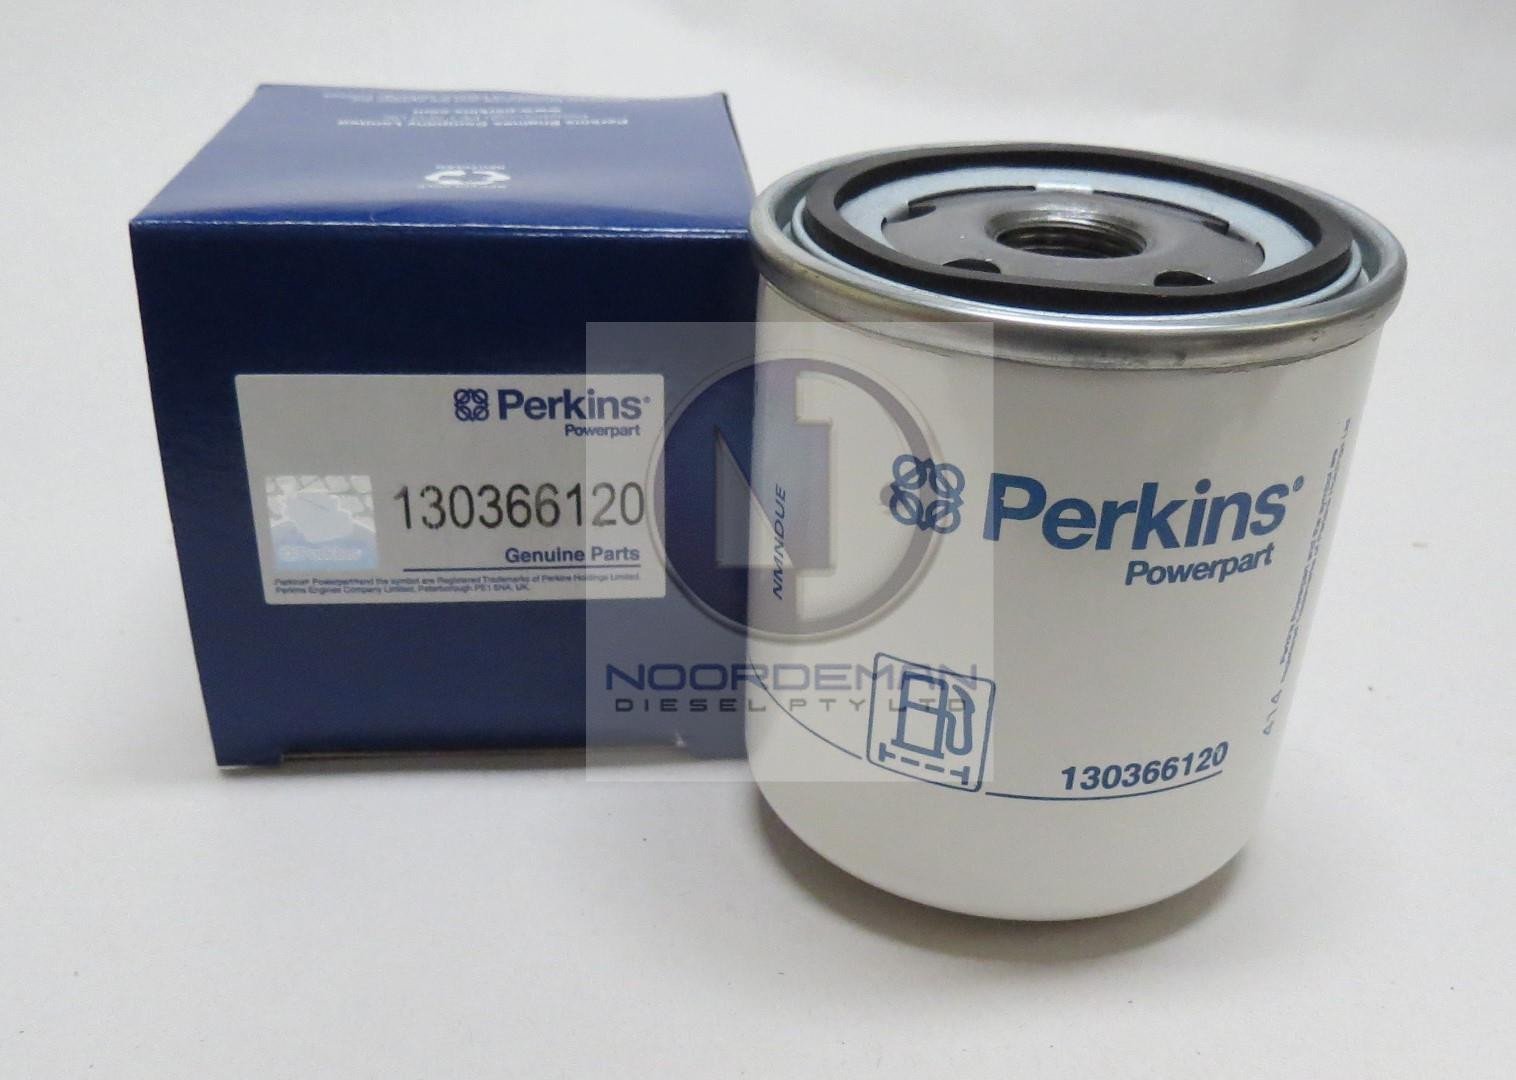 Filtro de aceite de motor Perkins Genuino x3-130366120 ahora 4429491 